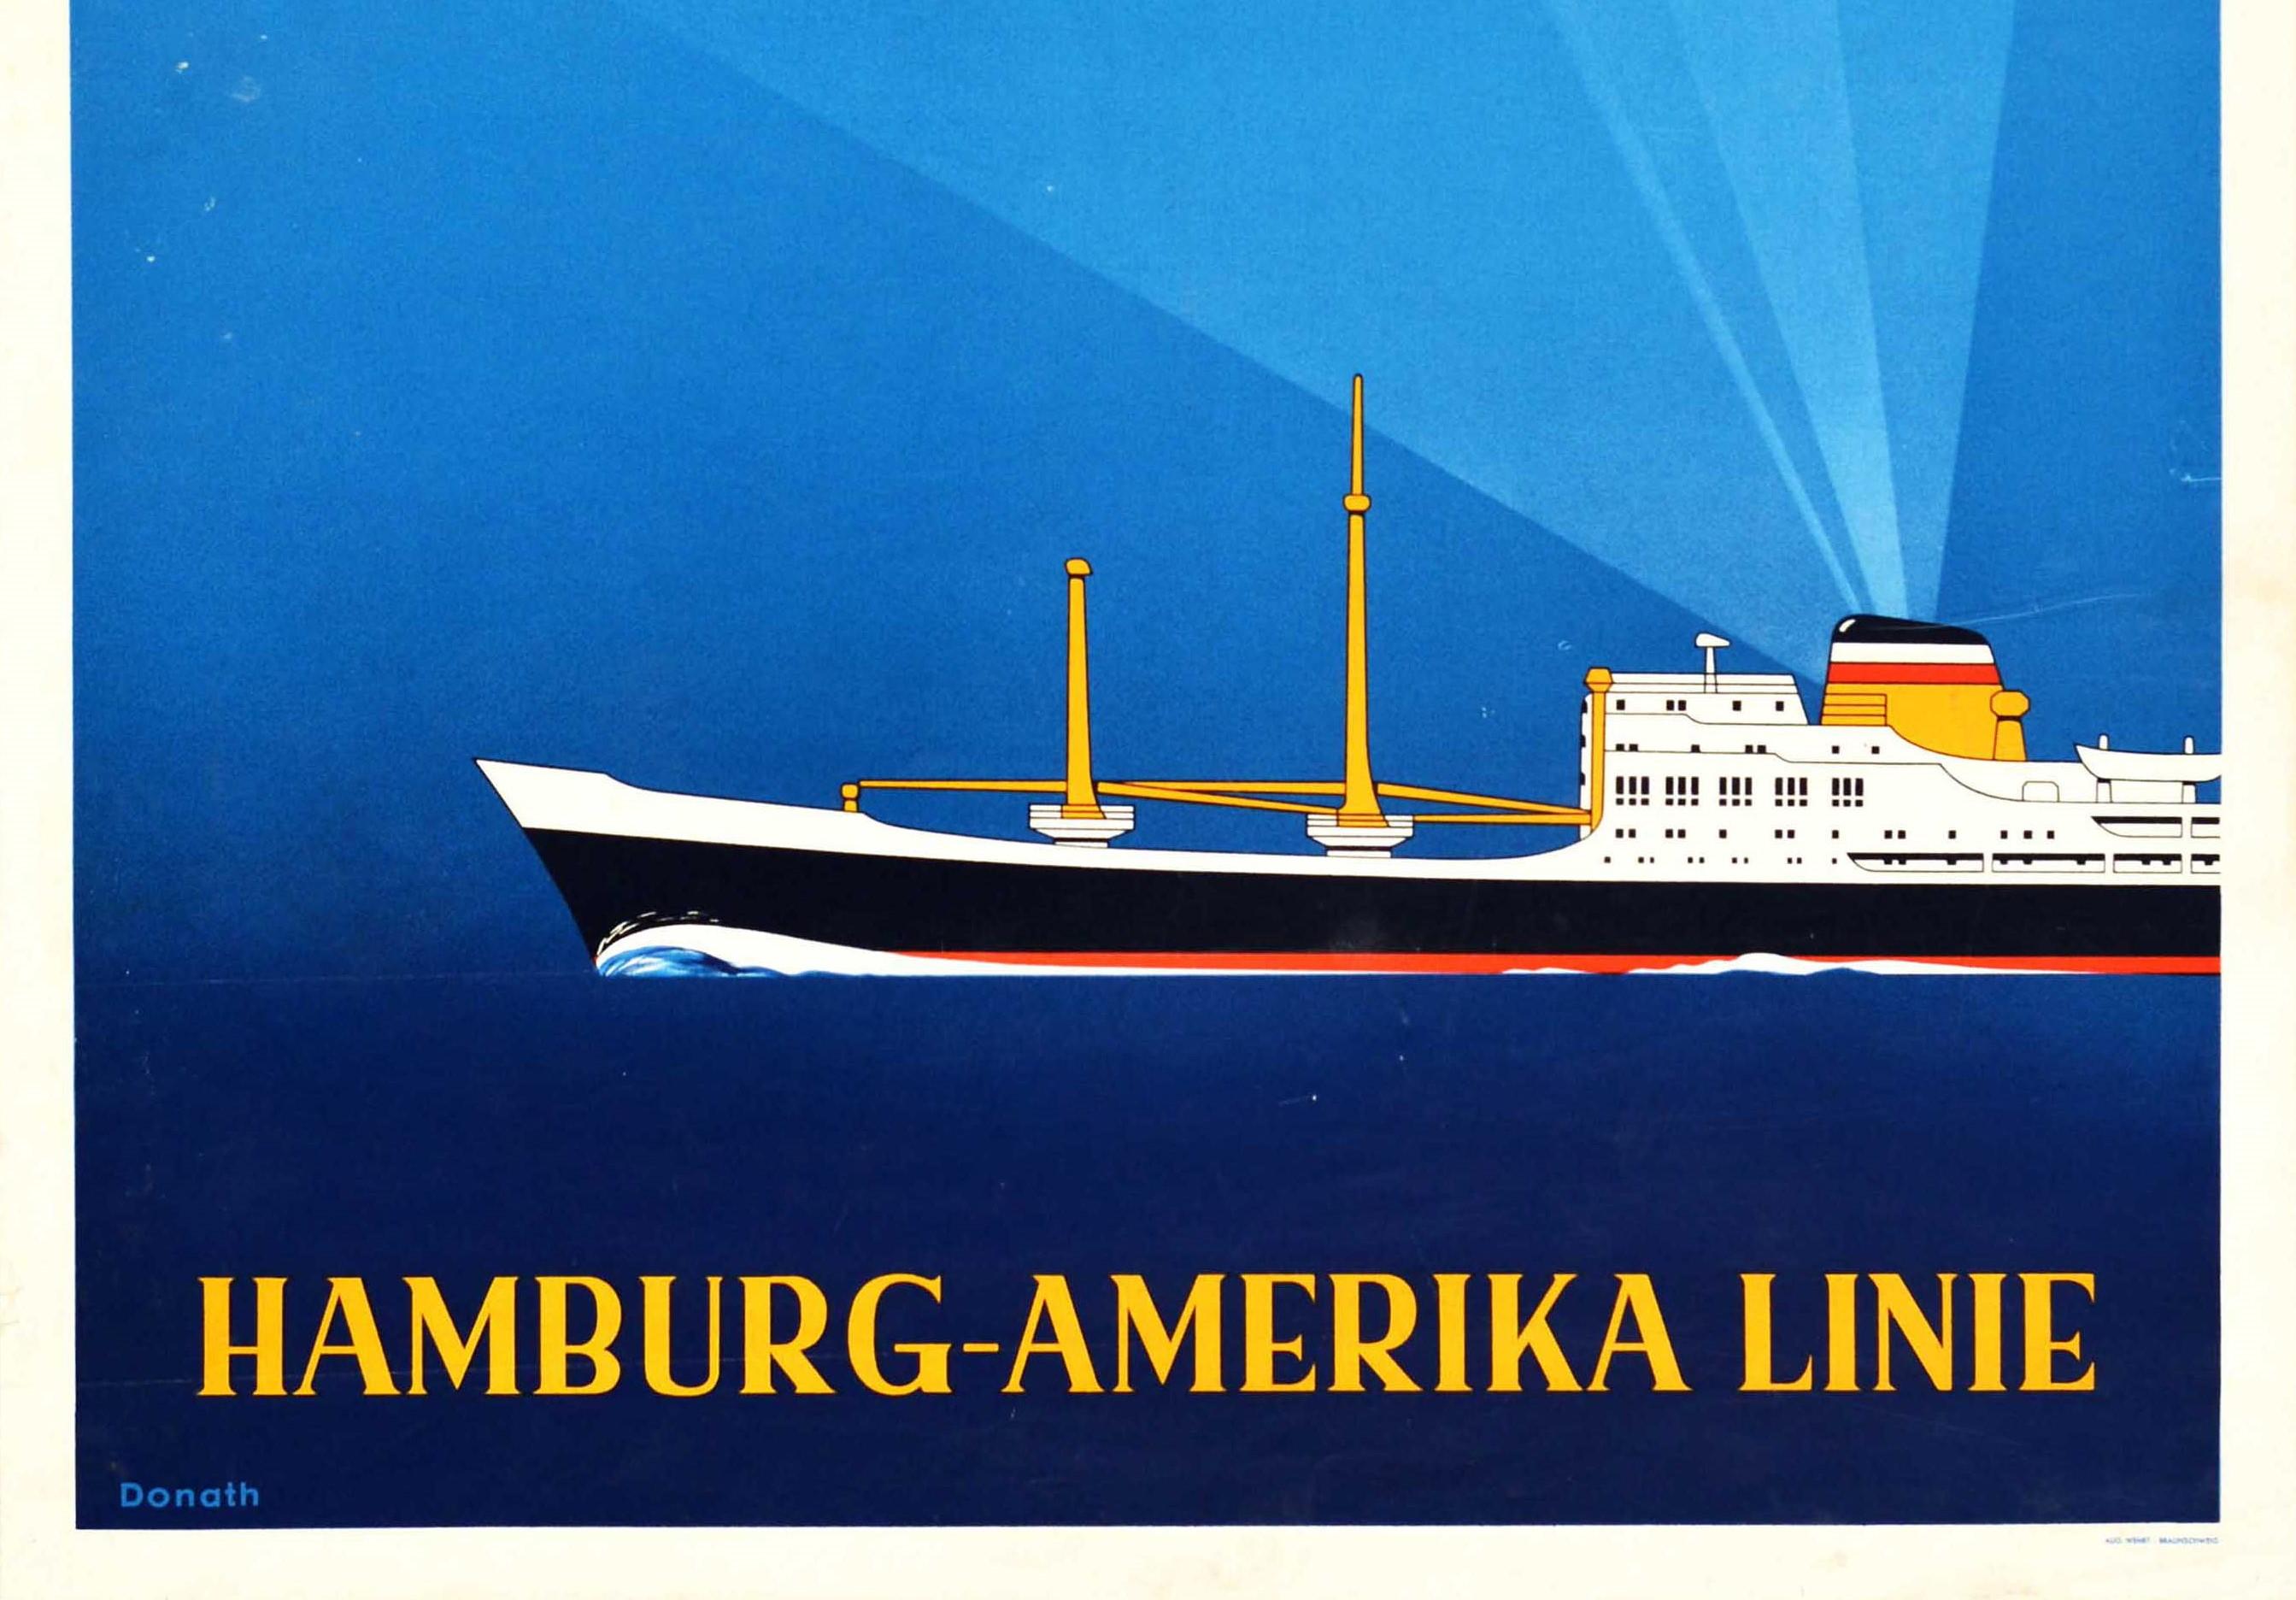 Original-Kreuzfahrtplakat für die Hamburg-Amerika Linie Schnell Sicher Zuverlassig. Das Plakat zeigt einen Ozeandampfer, der über den blauen Hintergrund fährt, mit dem Text und dem HAPAG-Logo oben, das von Strahlen aus dem Schornstein des Schiffes